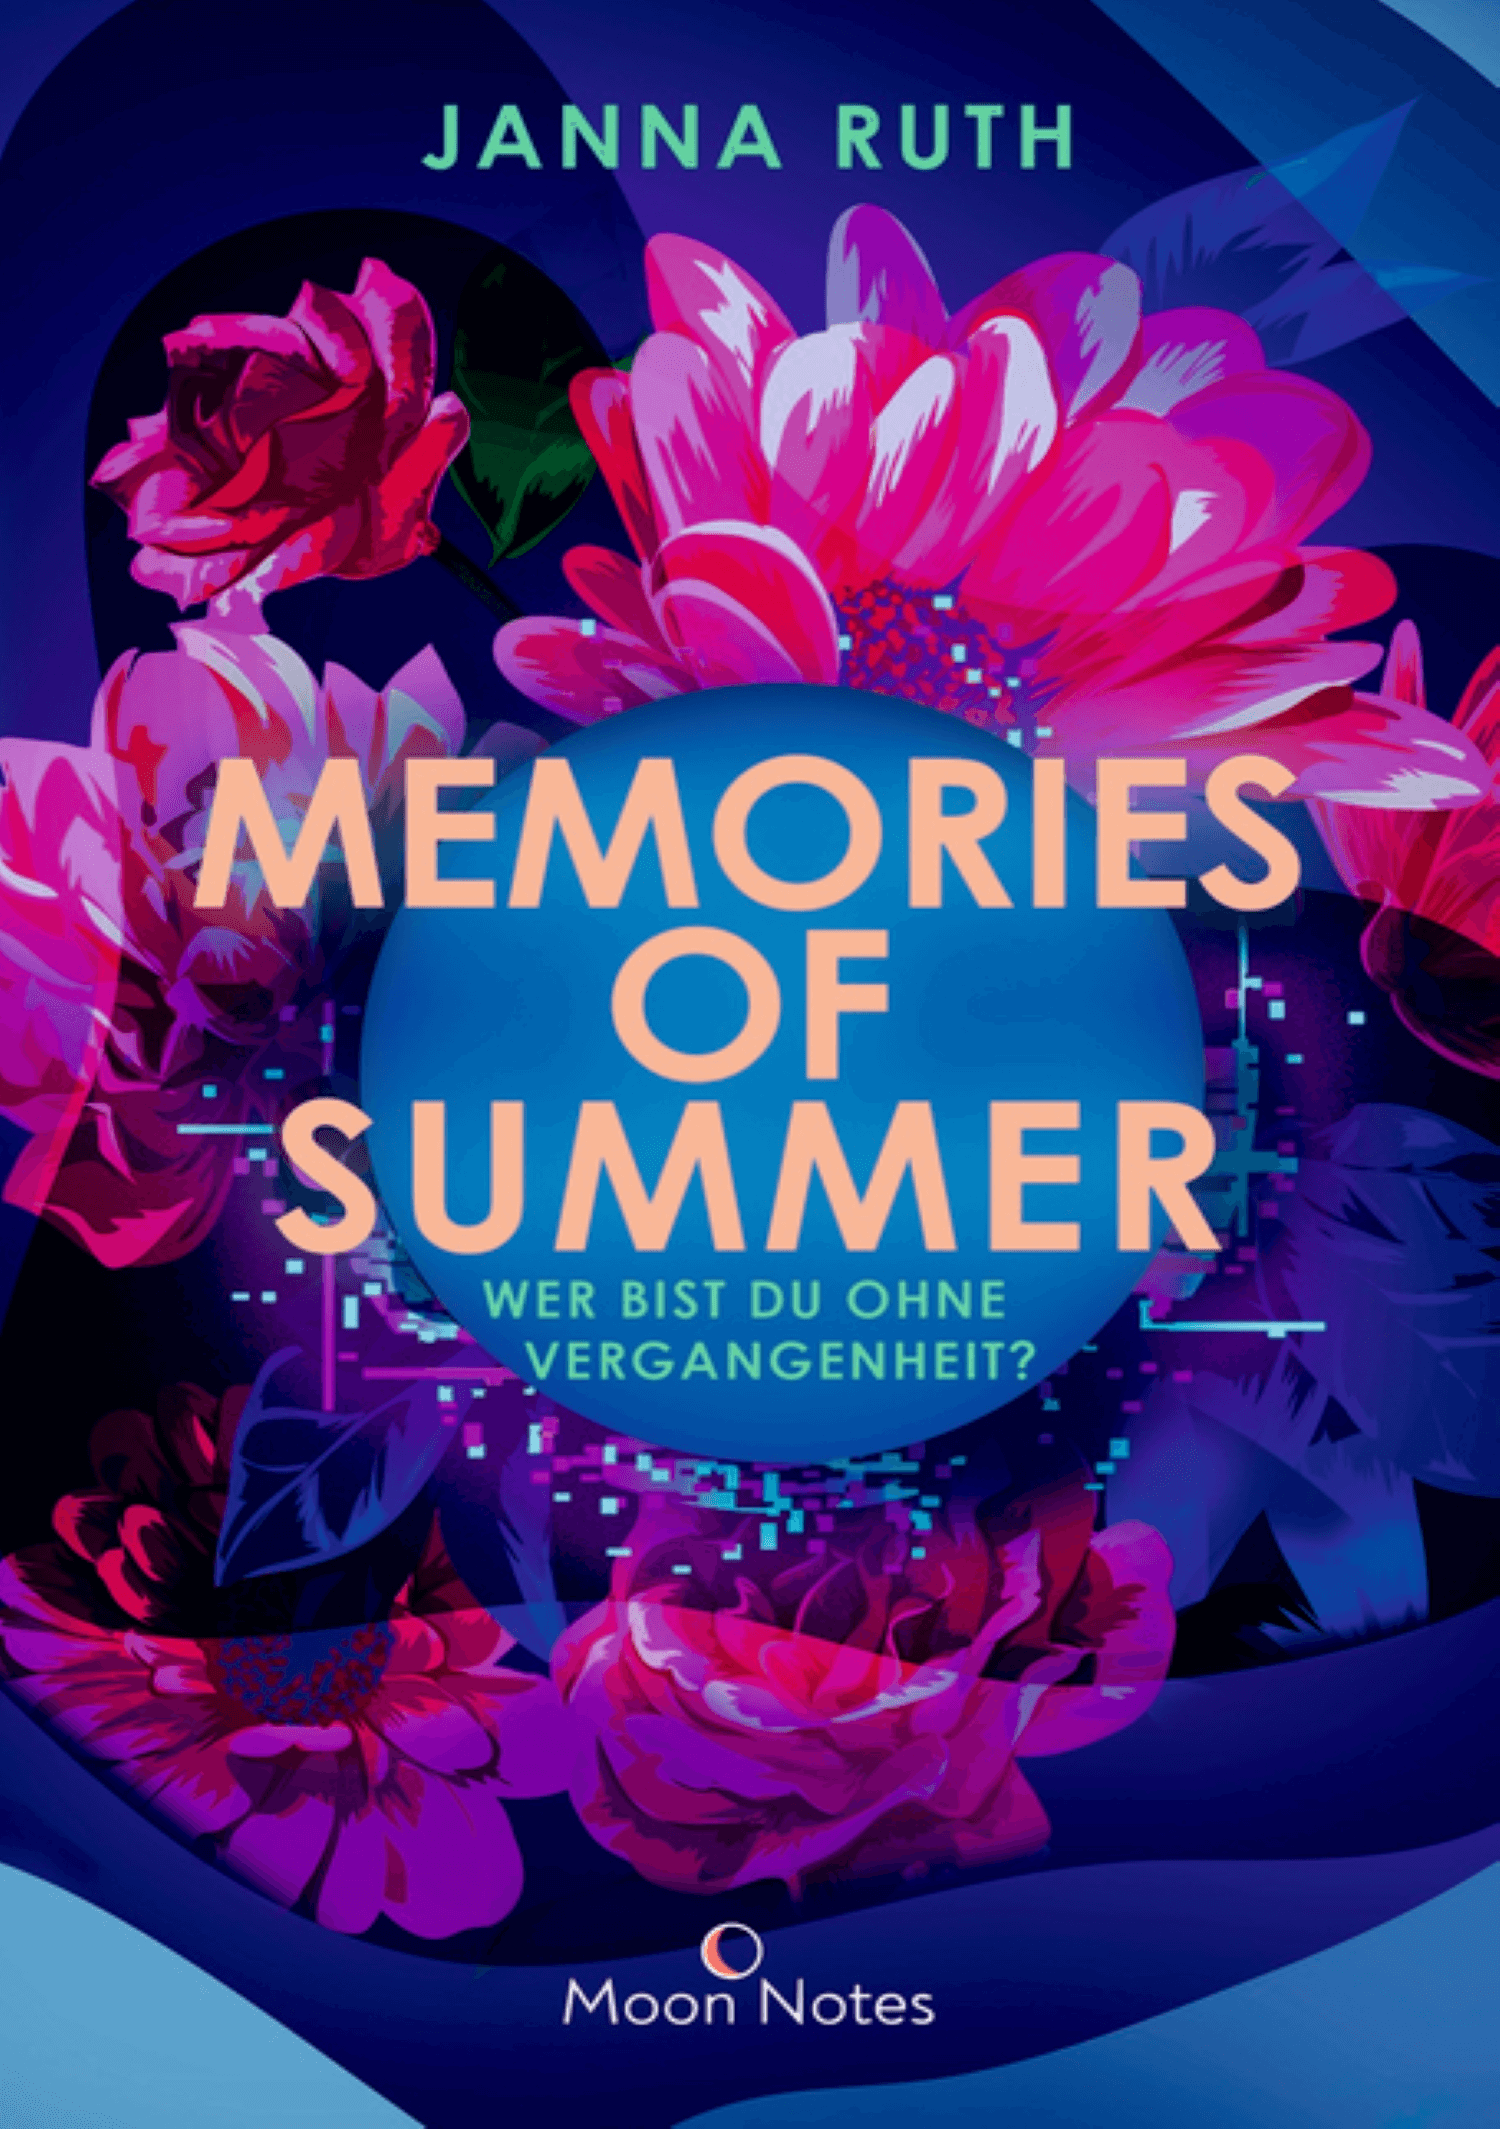 Memories of Summer (1)